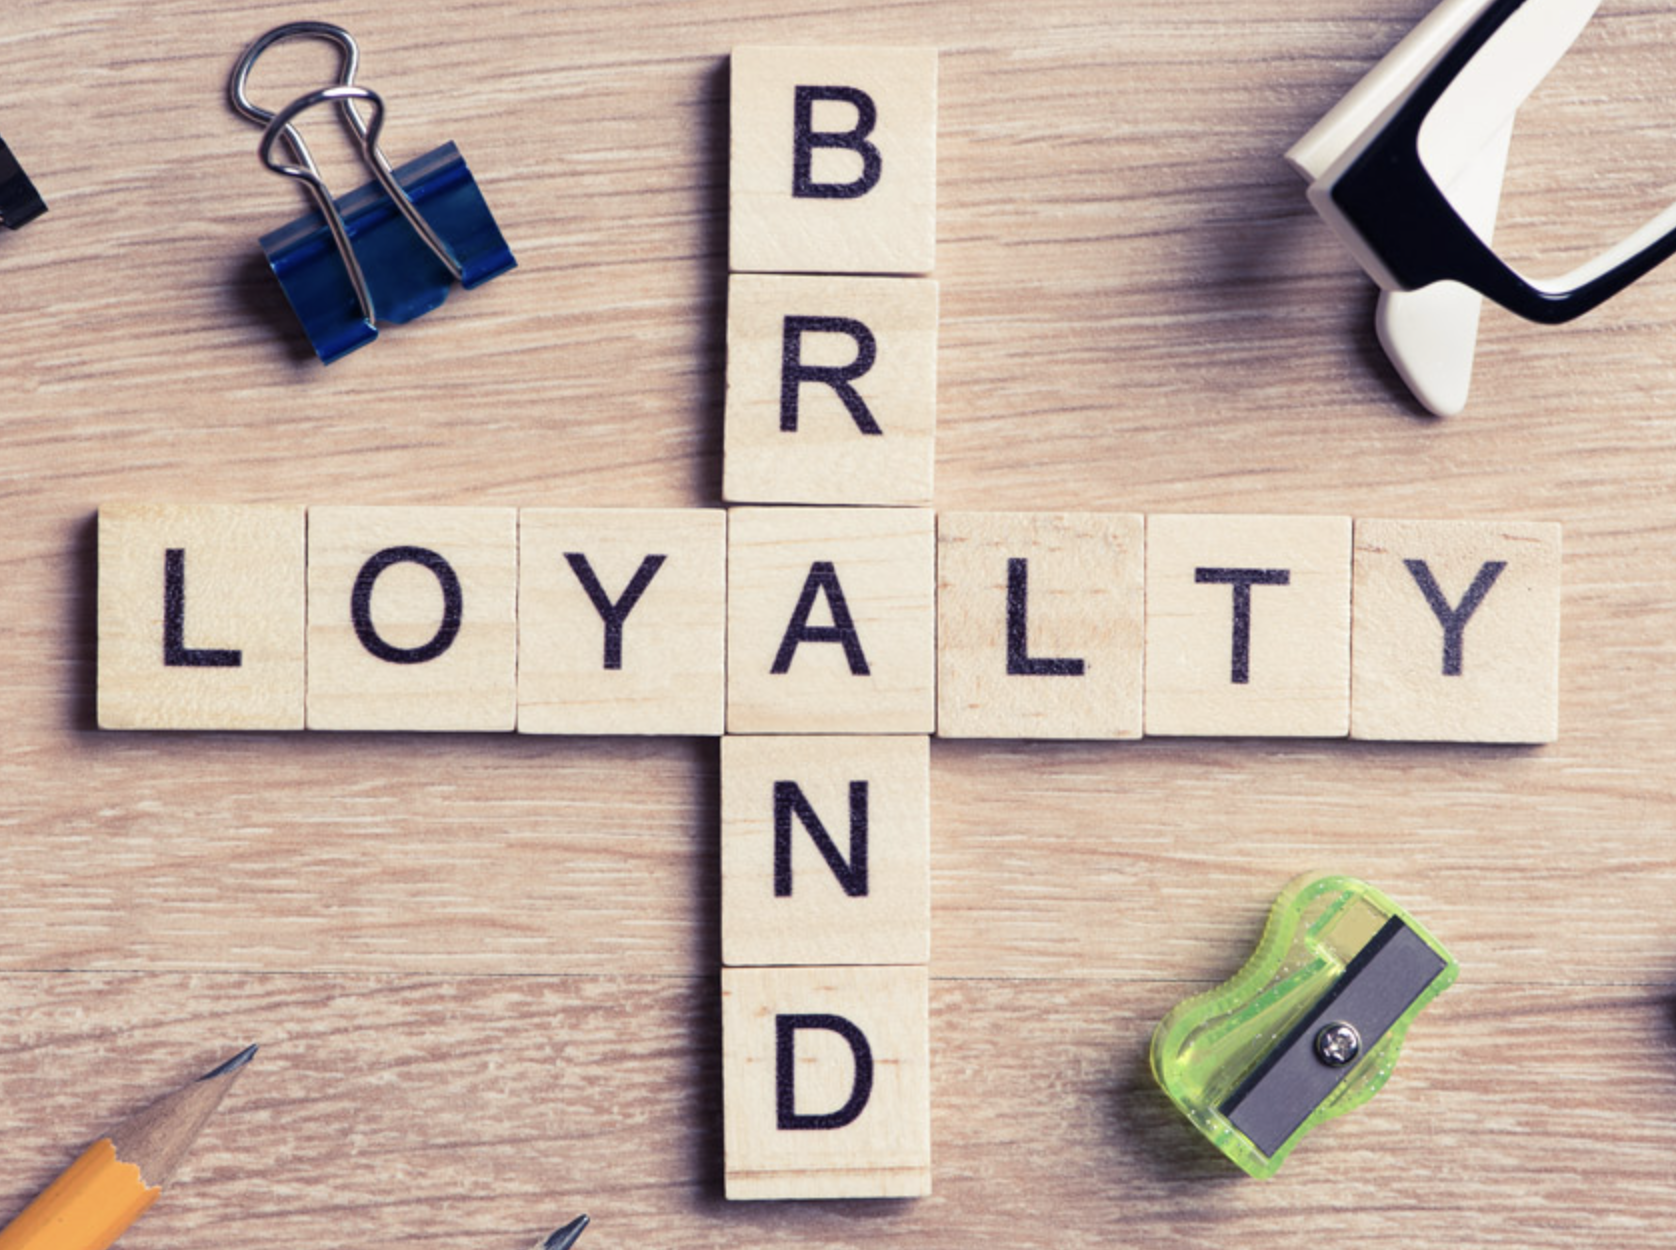 brand loyalty